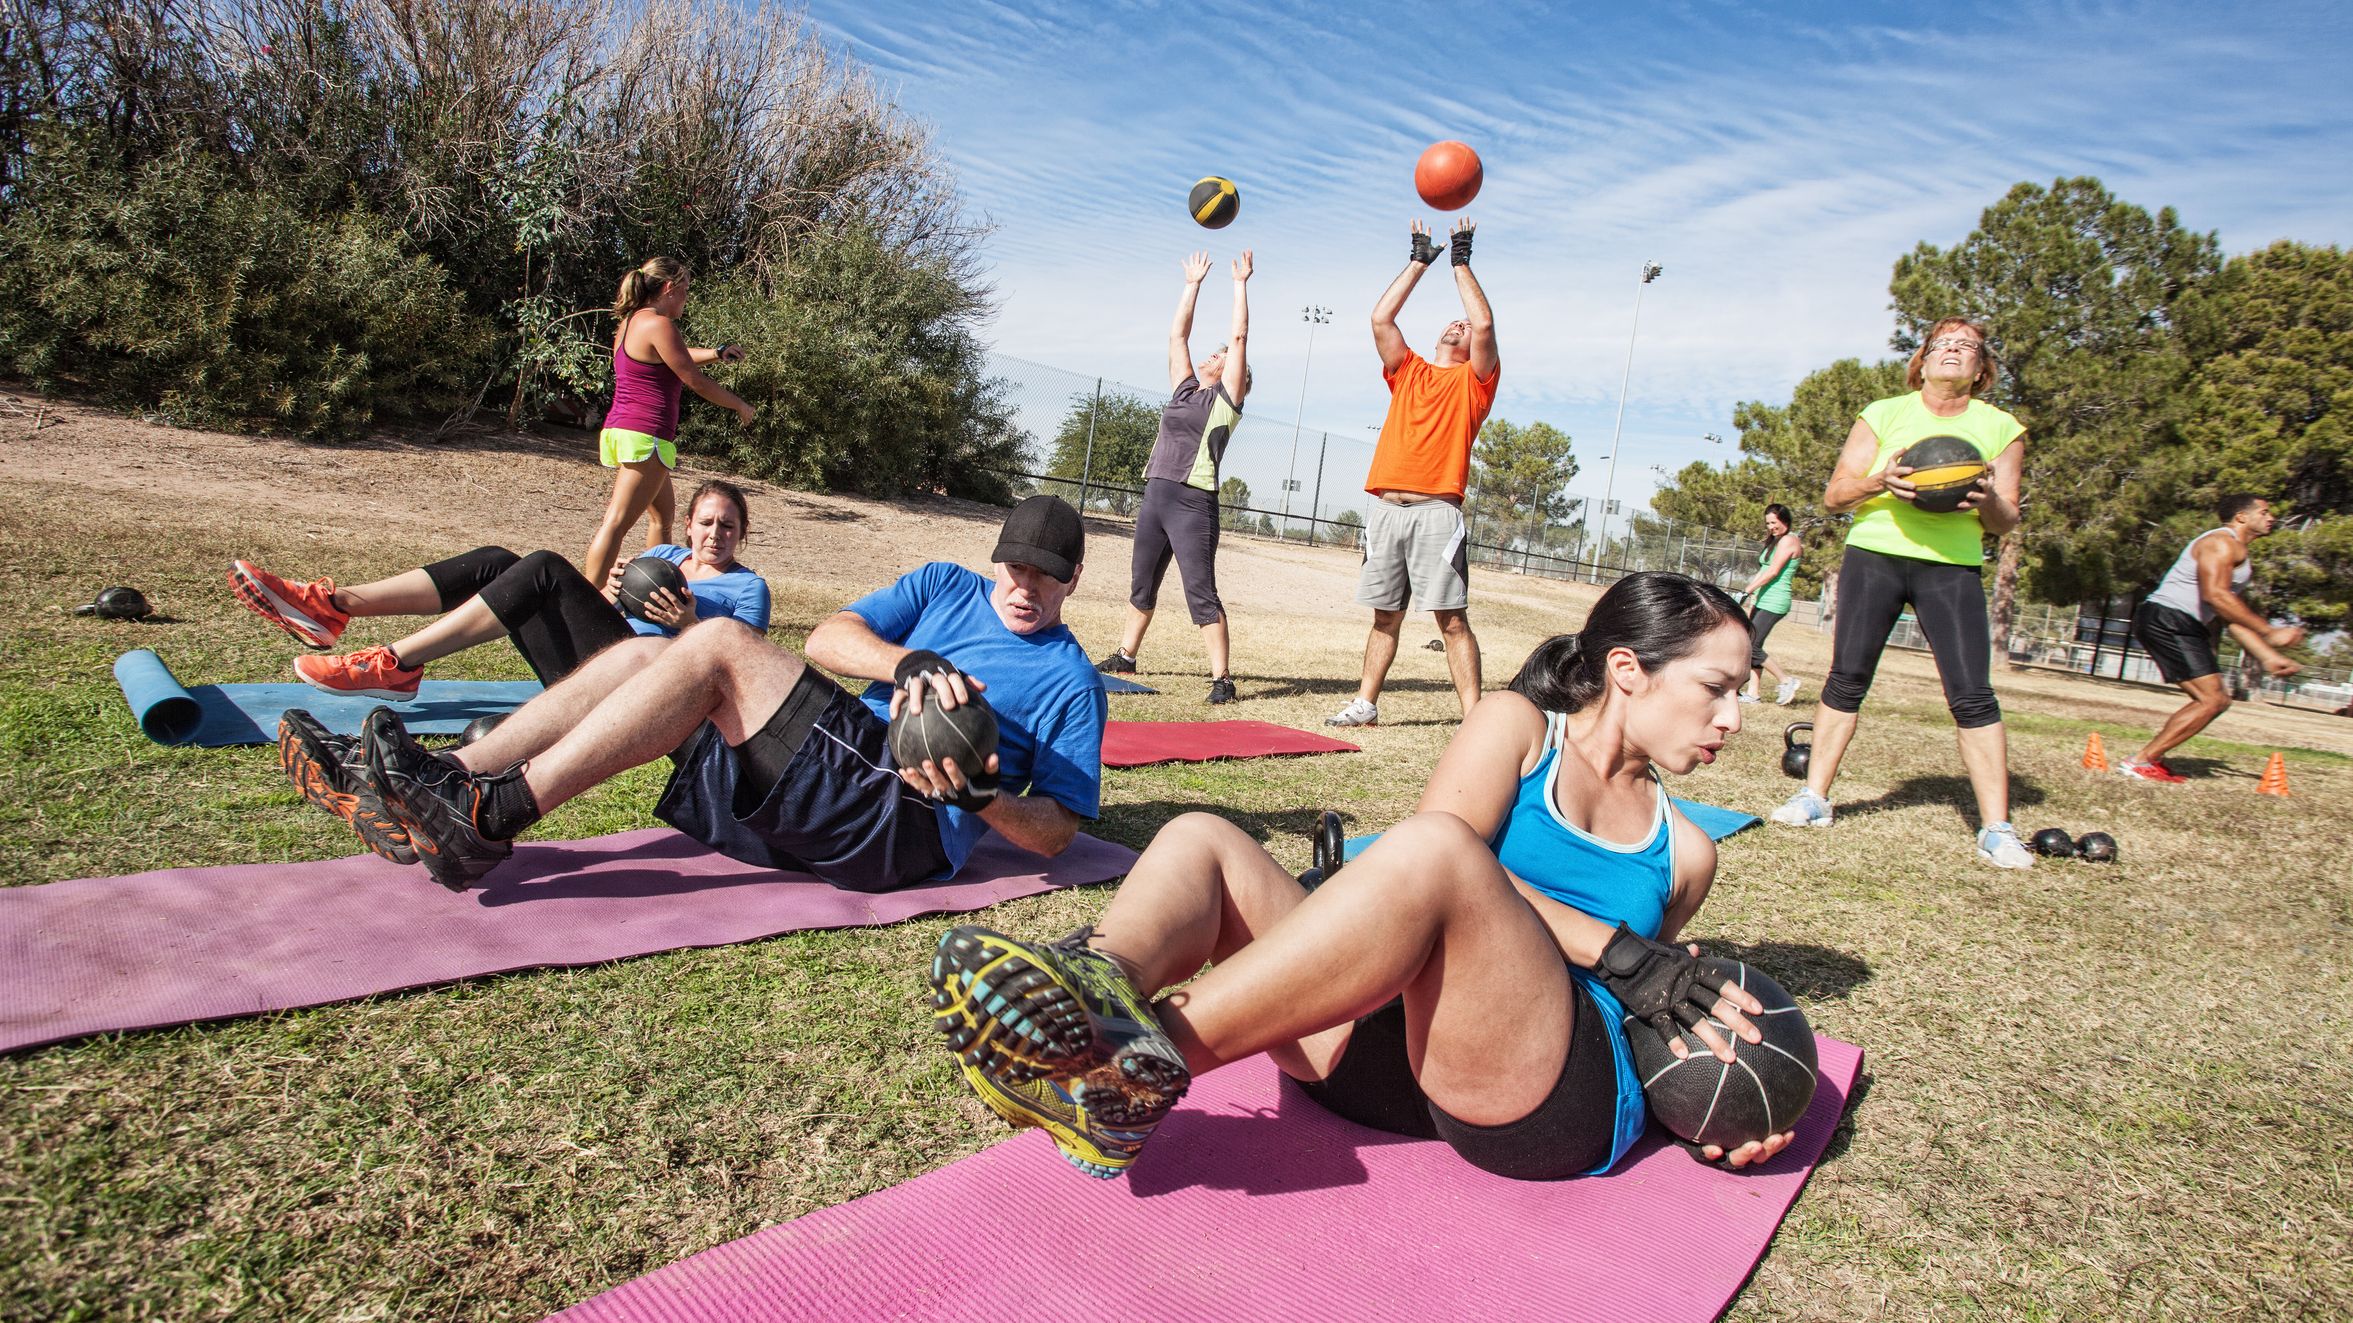 Auf dem Bild sind mehrere Personen zu sehen, die Outdoor verschiedene Functional Fitness-Übungen machen.